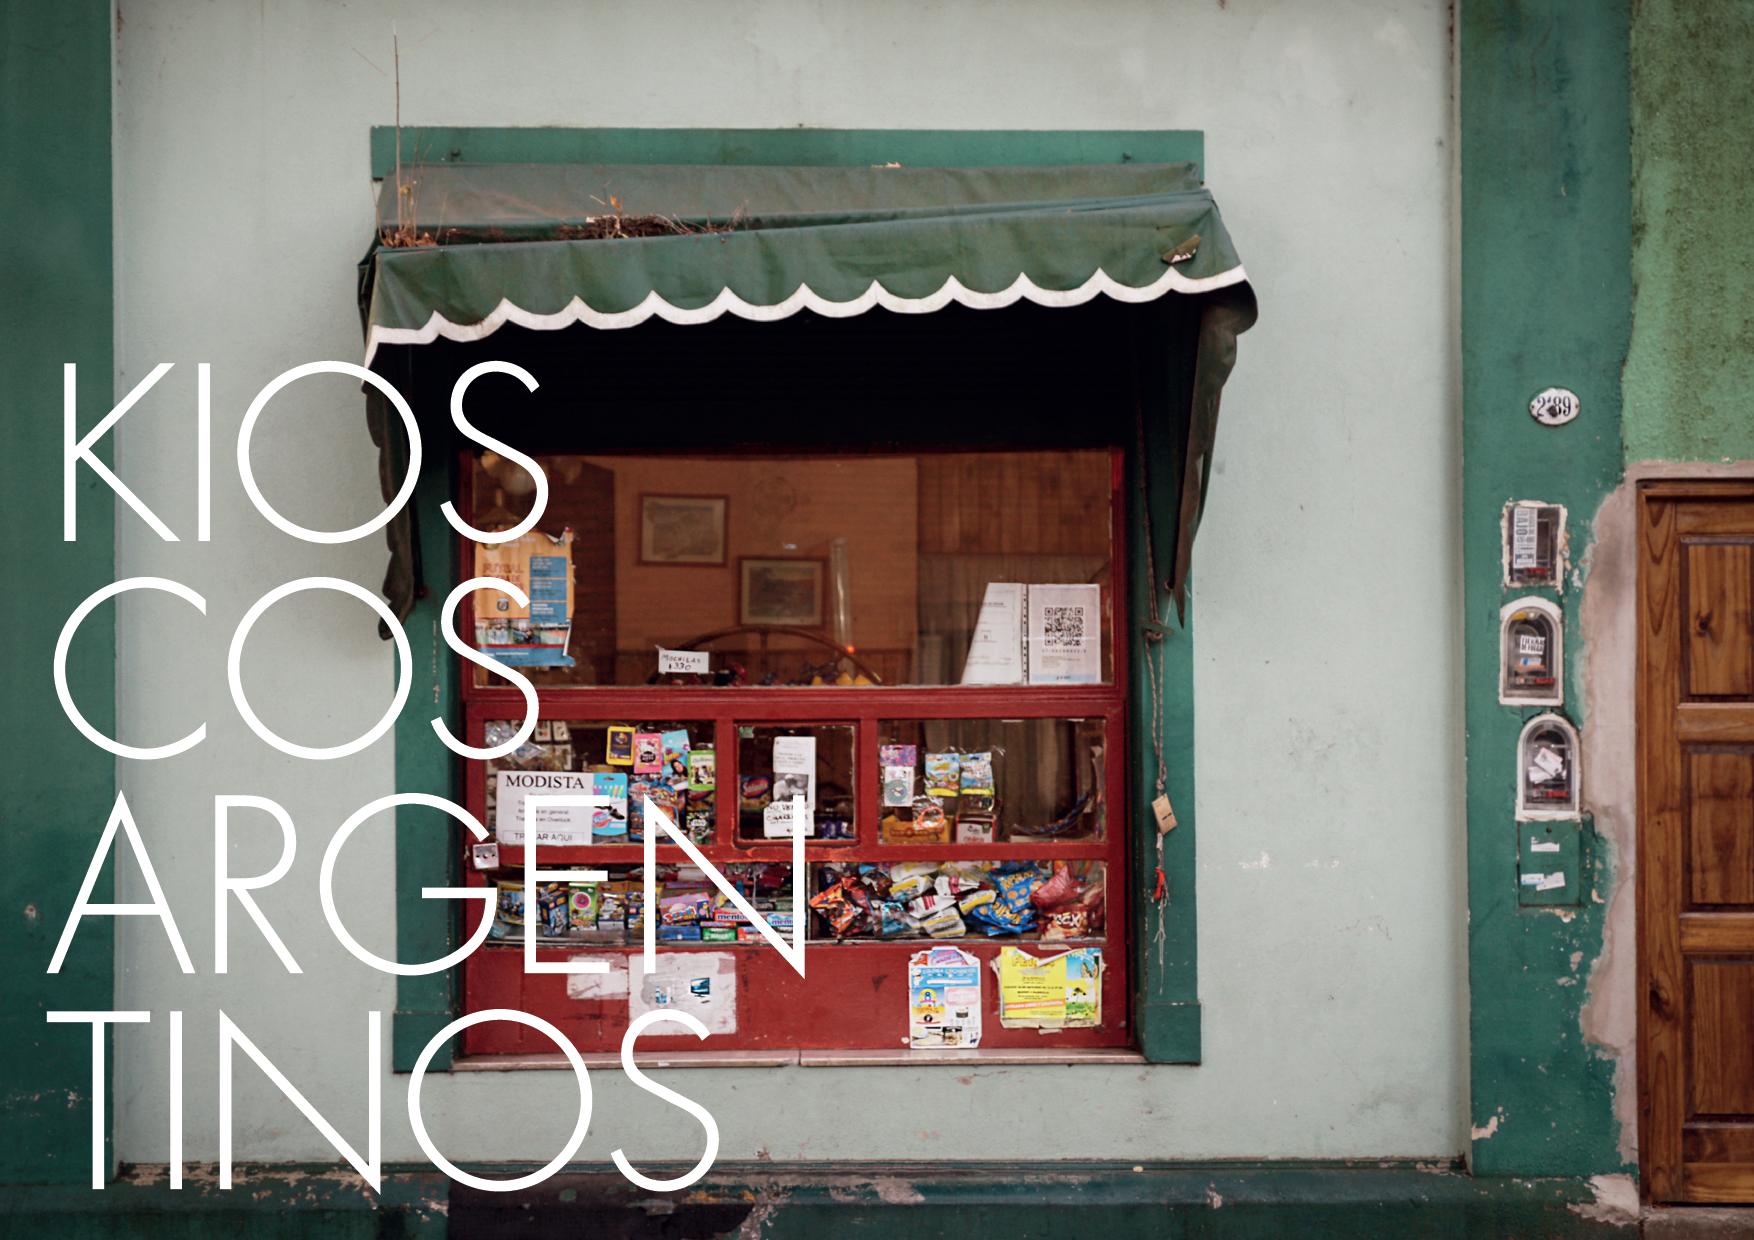 Portada de Nah! Contenidos produce la 1° muestra fotográfica de “Kioscos Argentinos” para Arcor